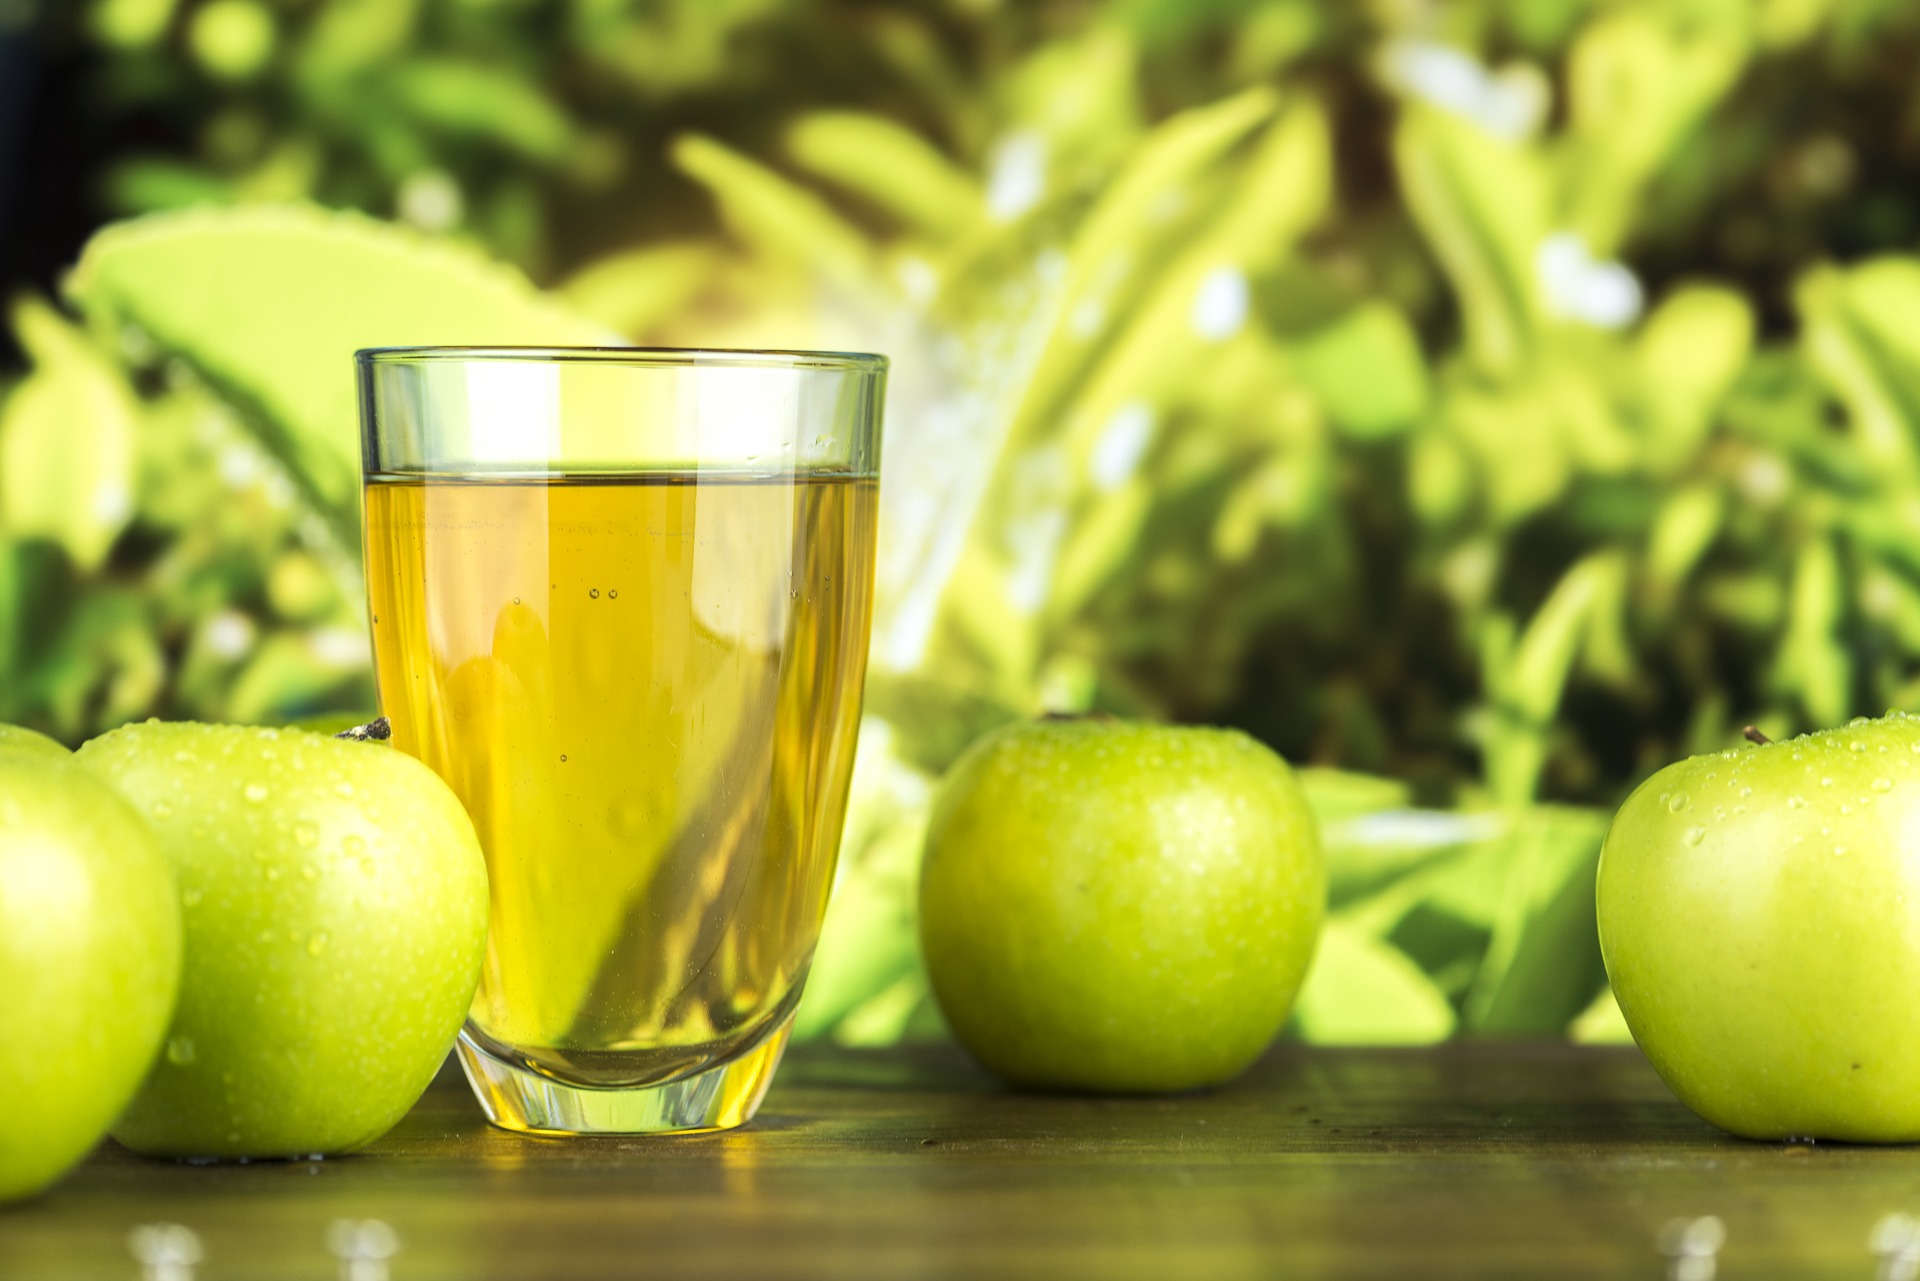 Зачем взрослым нужно пить яблочный сок, как когда-то в детстве: мнение эксперта